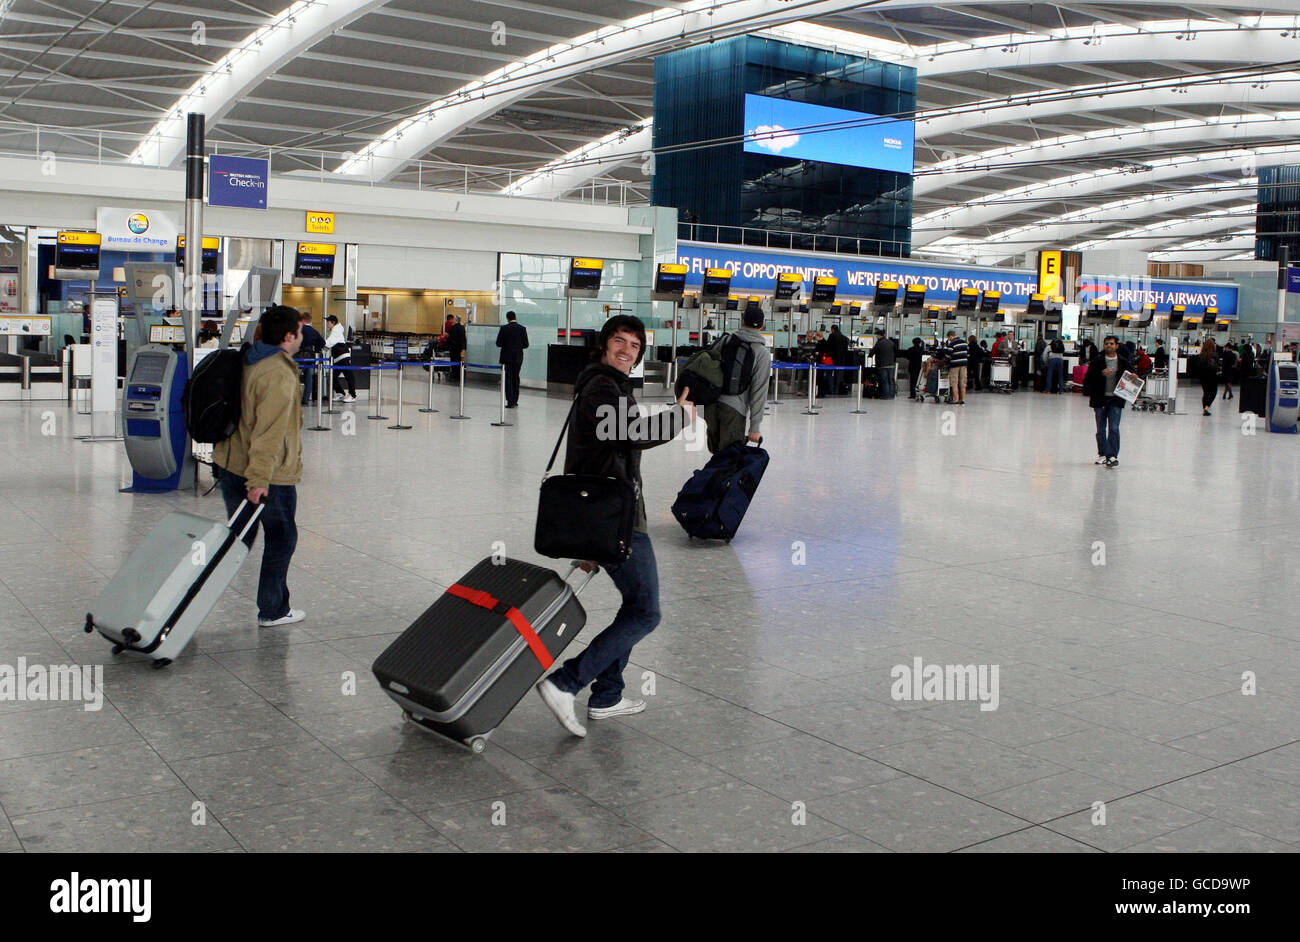 Check-in bei der British Airways Passagiere Tasche Drop, Flughafen  Dulles-IAD, Washington DC USA Stockfotografie - Alamy